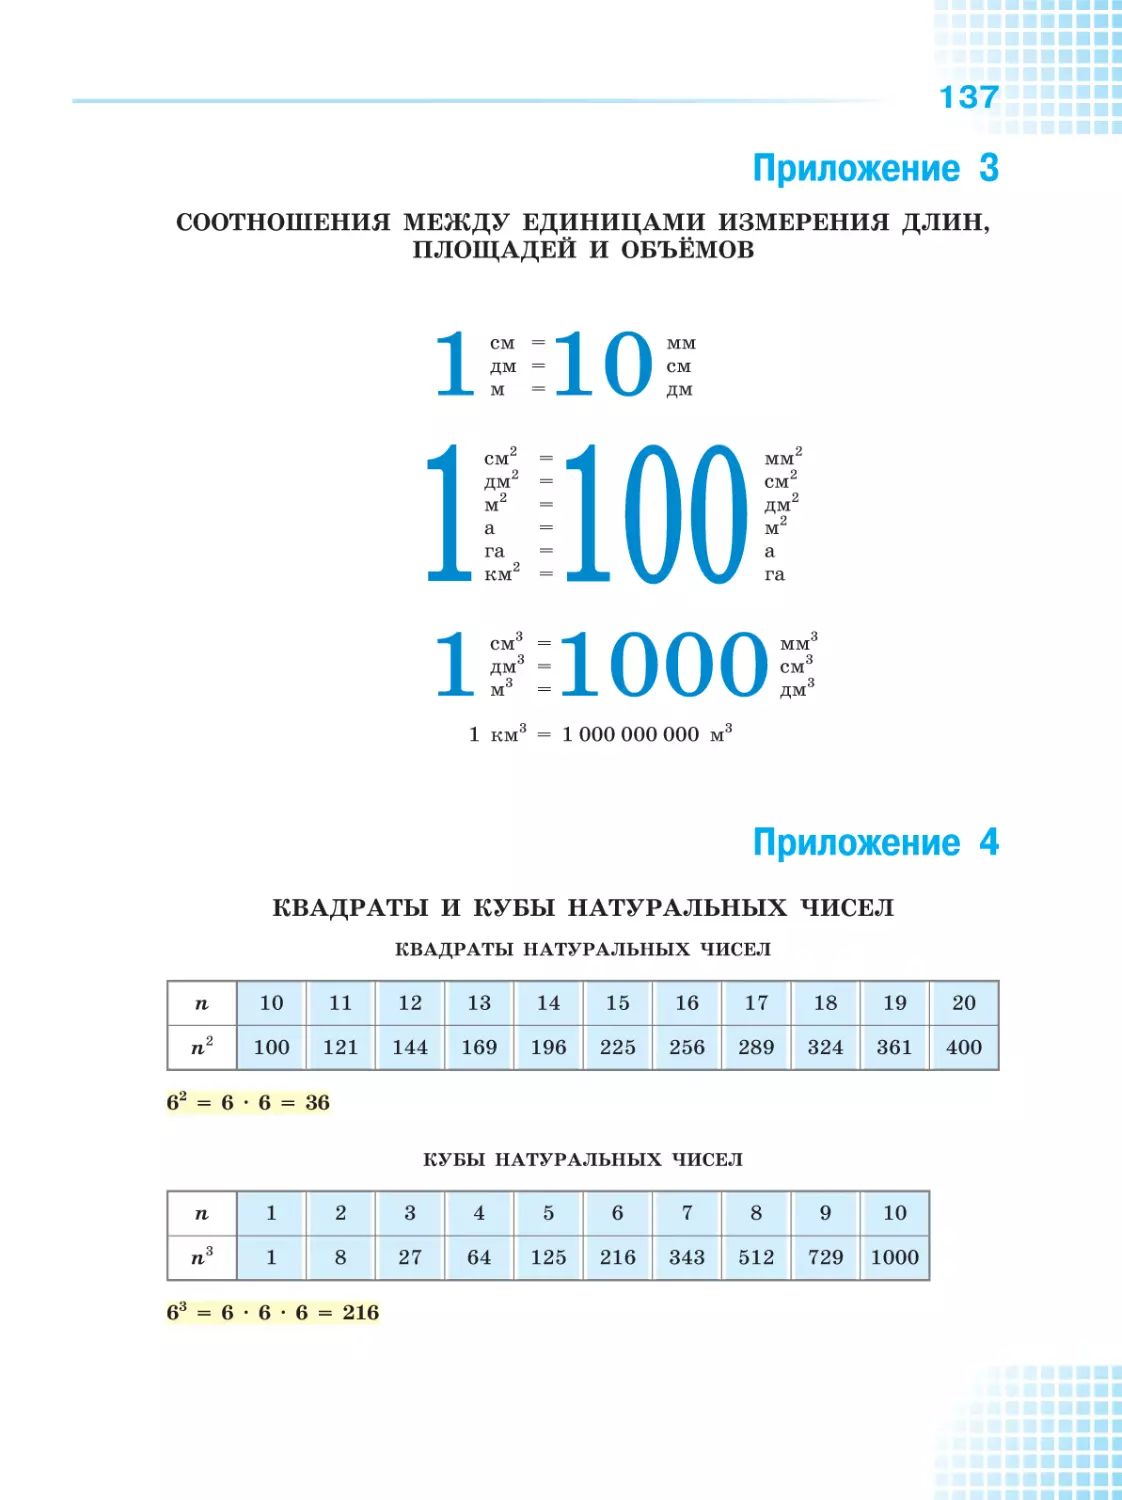 3. Соотношения между единицами измерения длин, площадей и объёмов
4. Квадраты и кубы натуральных чисел